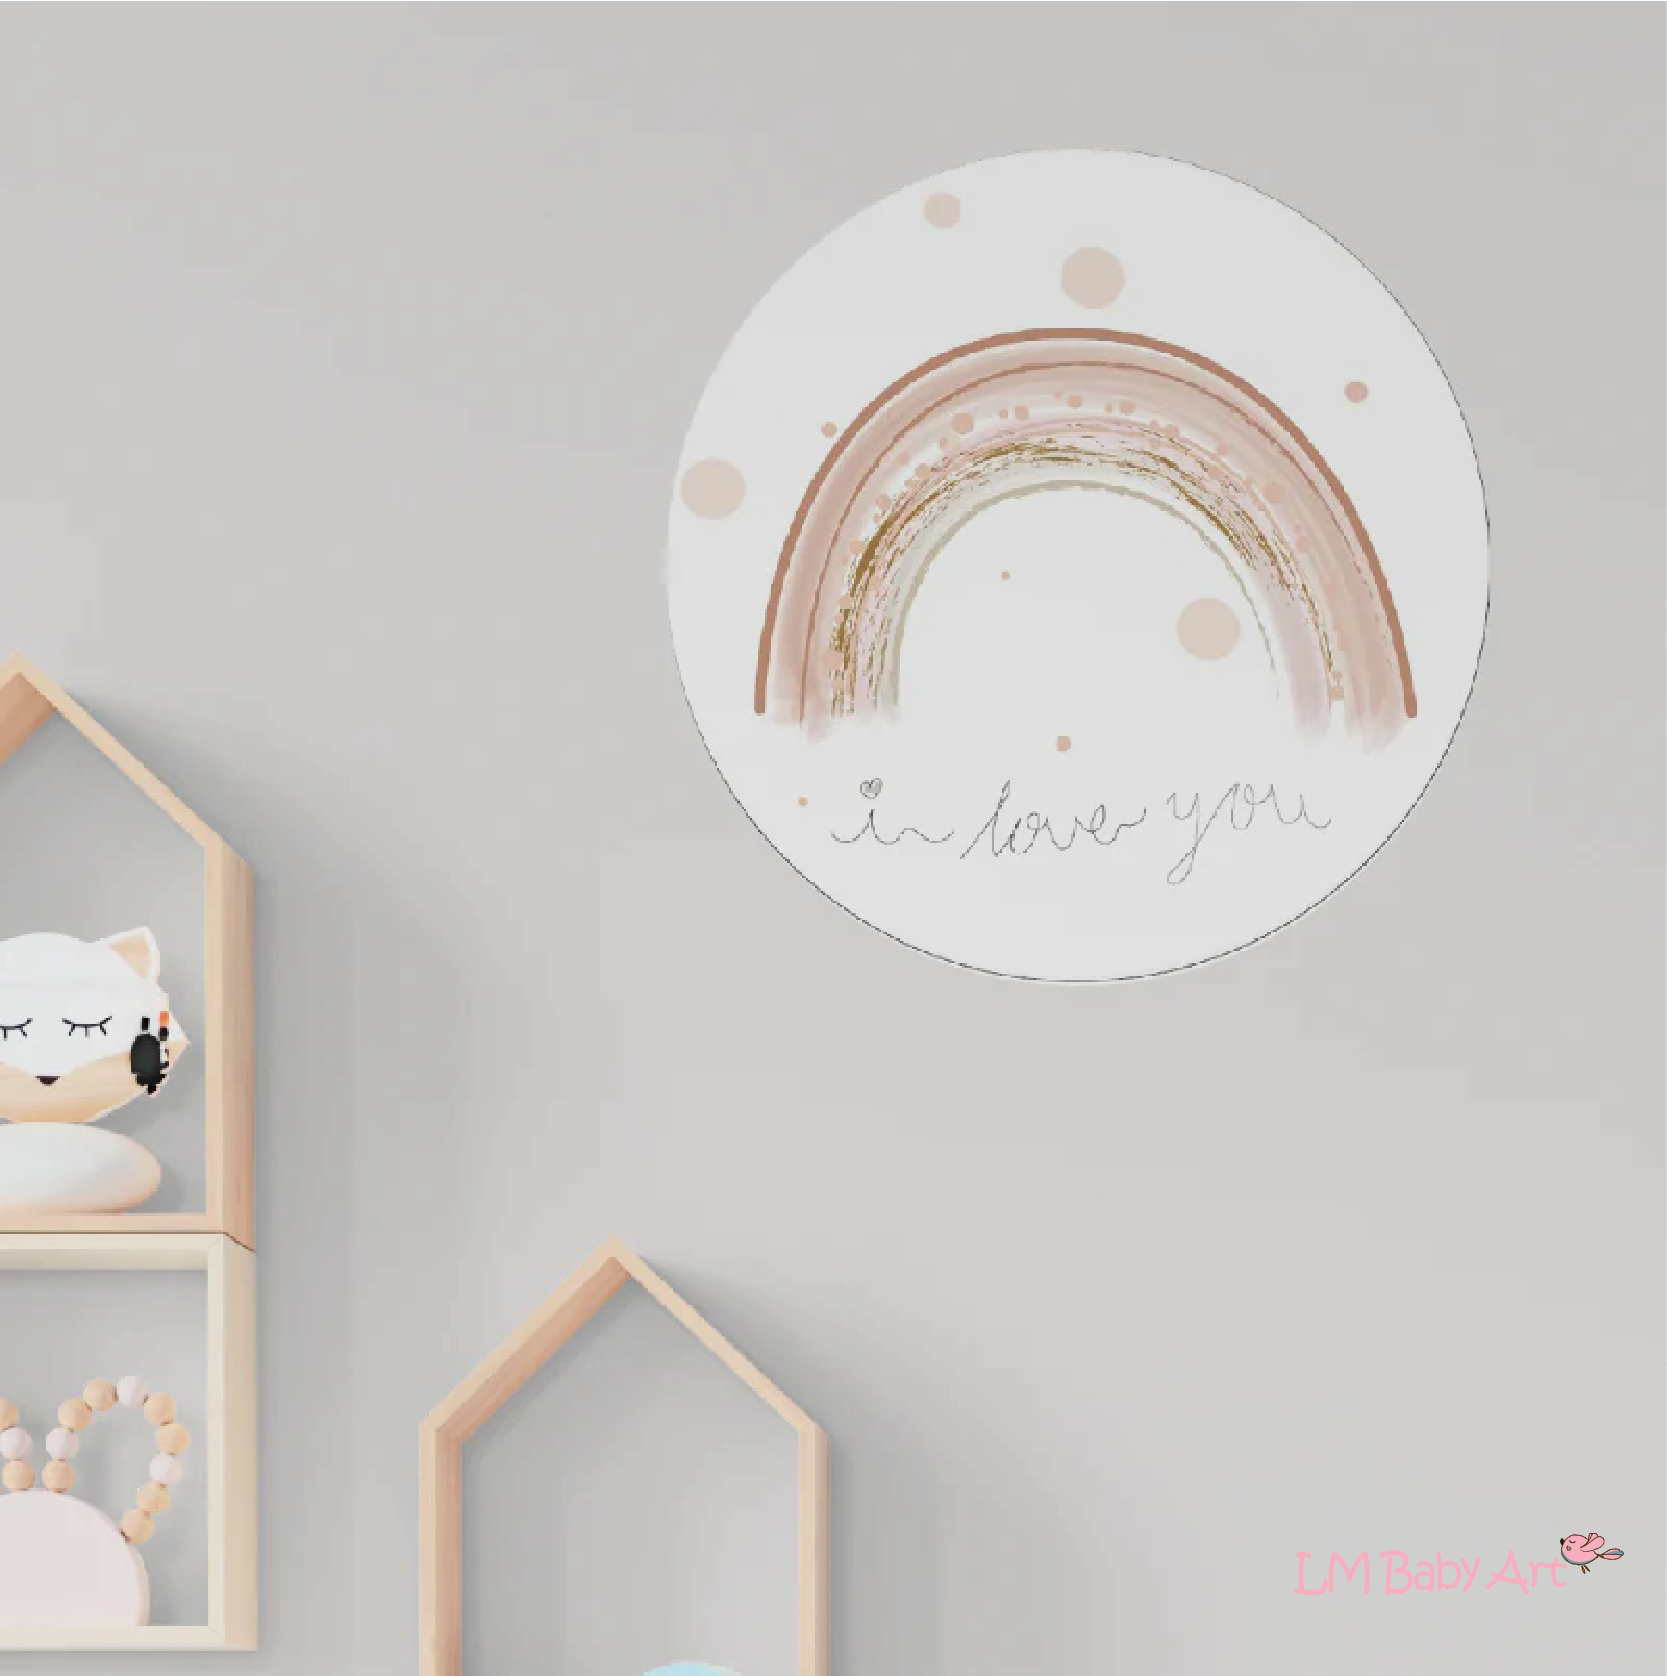 Muurcirkel regenboog - I love you - LM Baby Art | Muurdecoratie voor de allerkleinsten